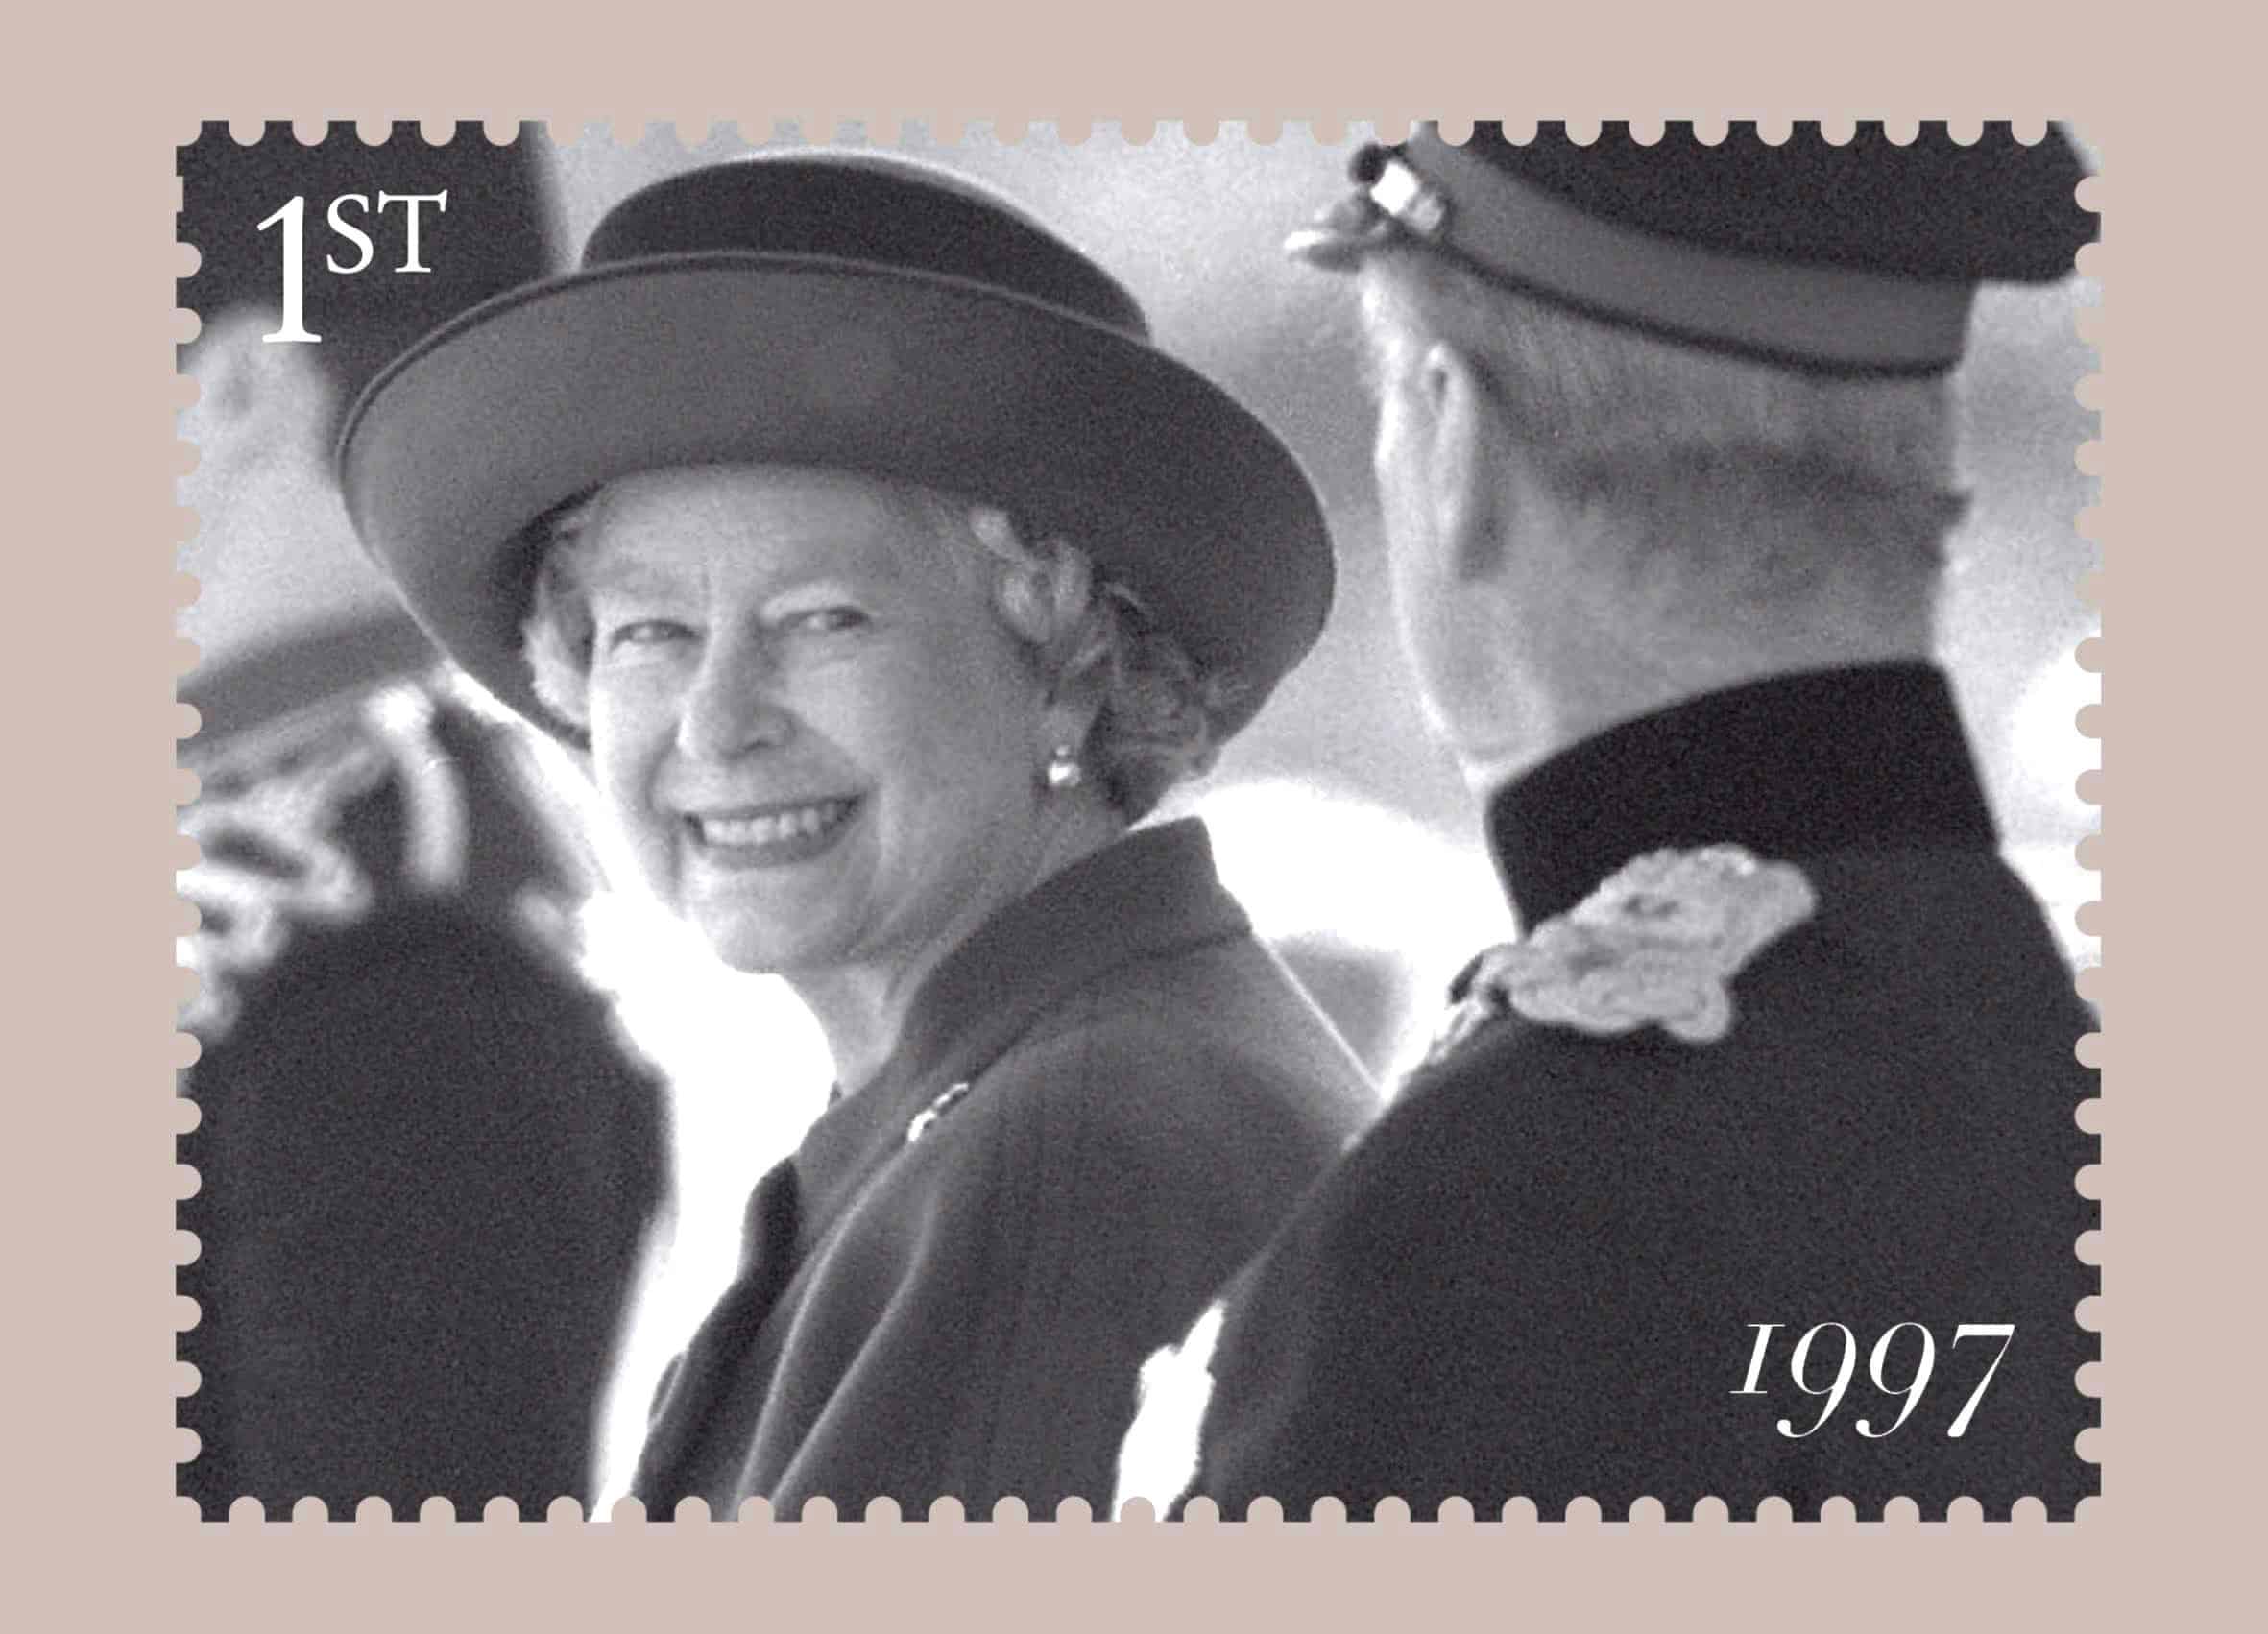 Foto cedida por Correos del Reino Unido para conmemorar el 60 aniversario de la boda de la entonces princesa Isabel y el teniente Mounbatten.